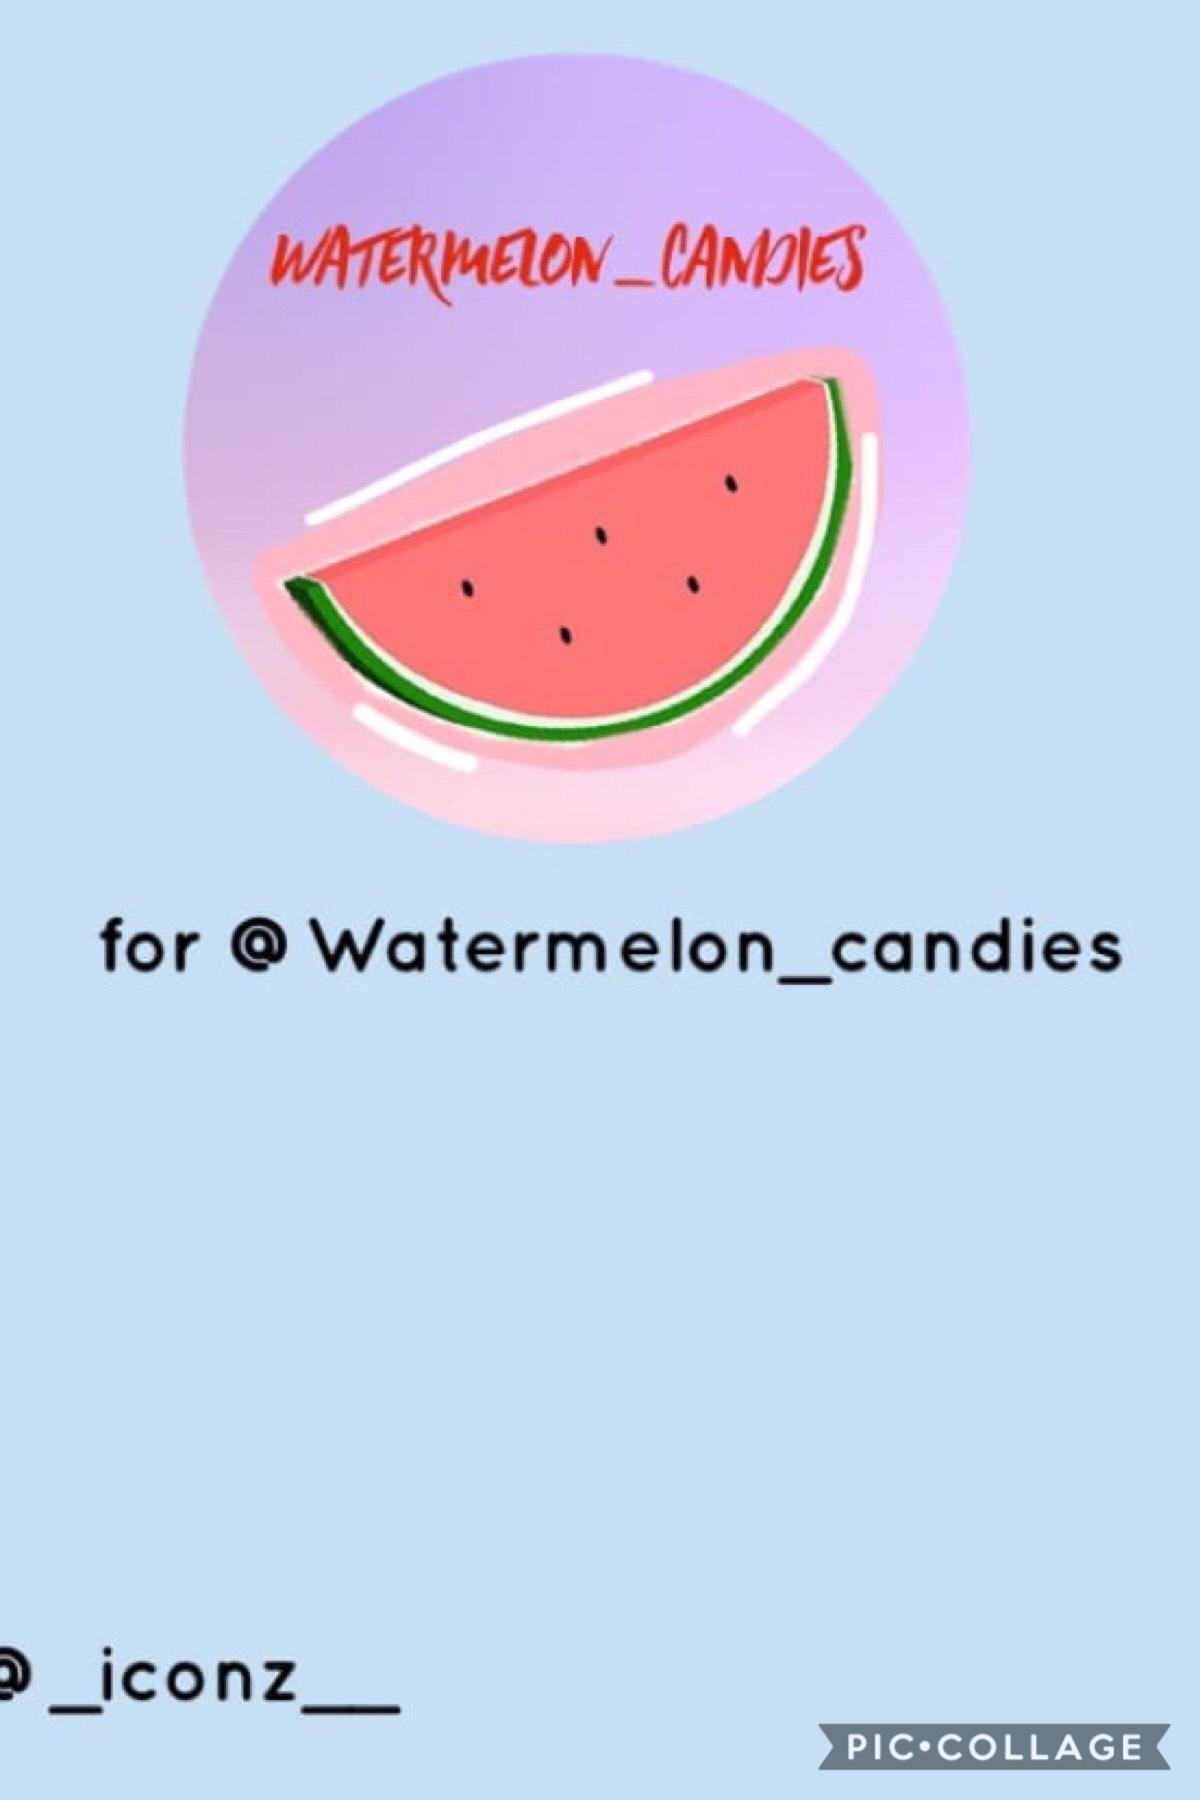 @Watermelon_candies
